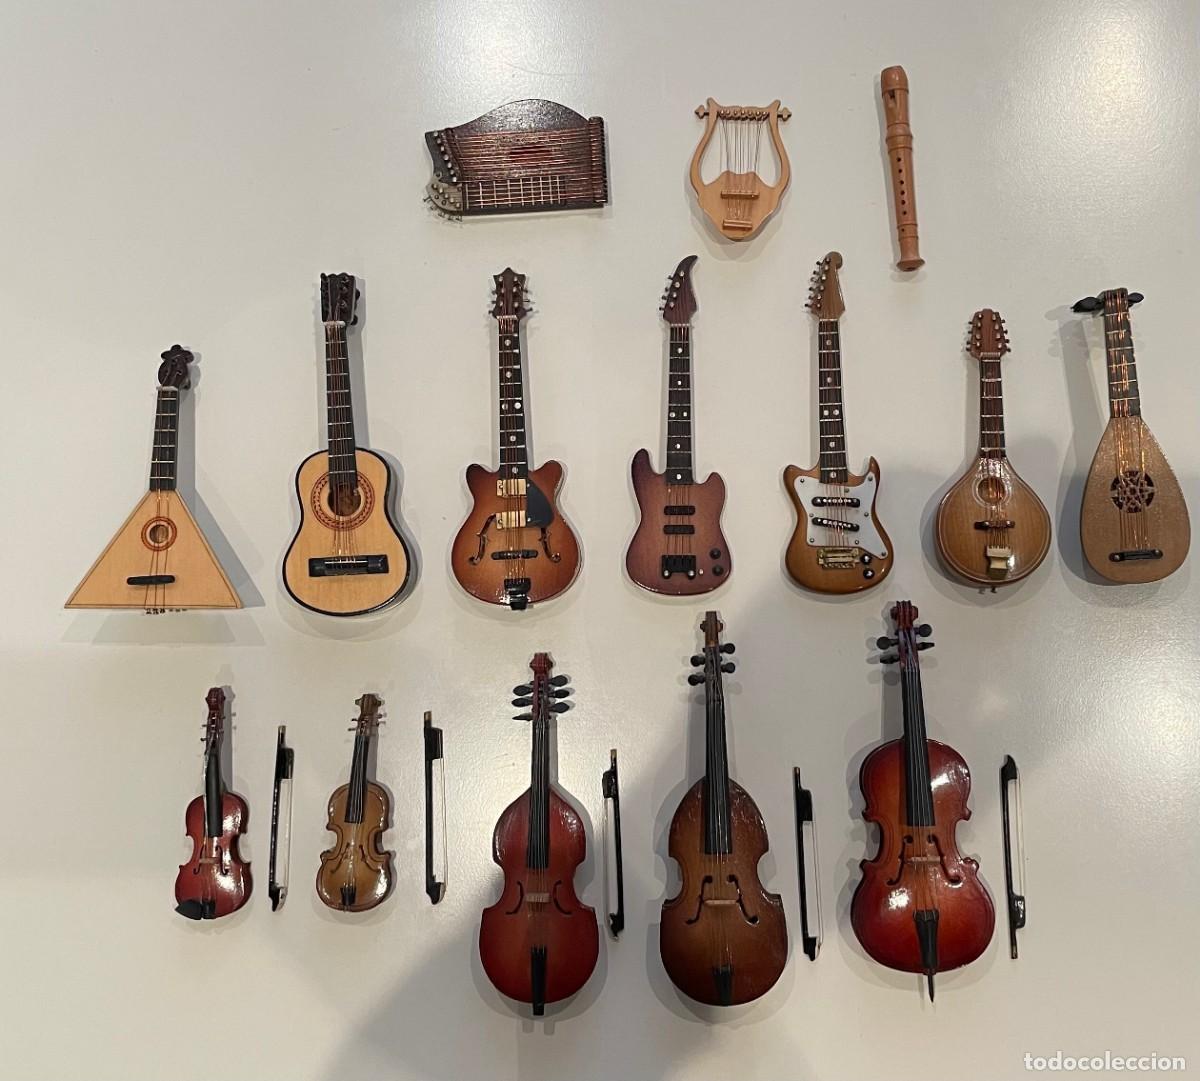 Norteamérica Destierro Oferta instrumentos musicales - Compra venta en todocoleccion